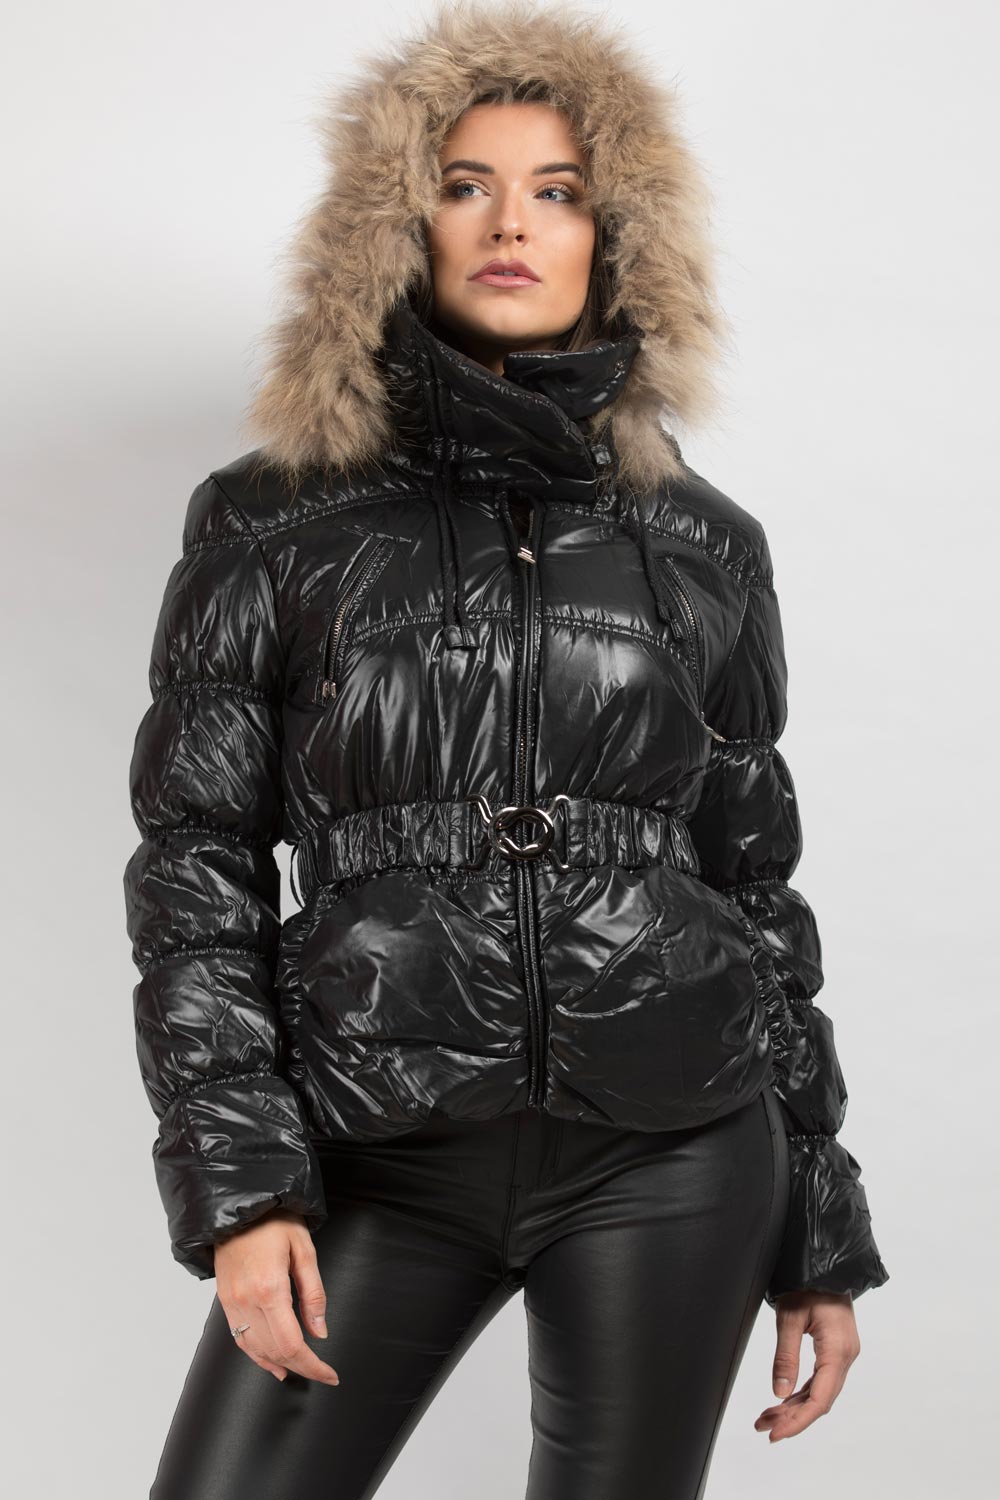 Black Shiny Puffer Coat With Hood : Shiny Puffer Fur Hood Coat Faux ...